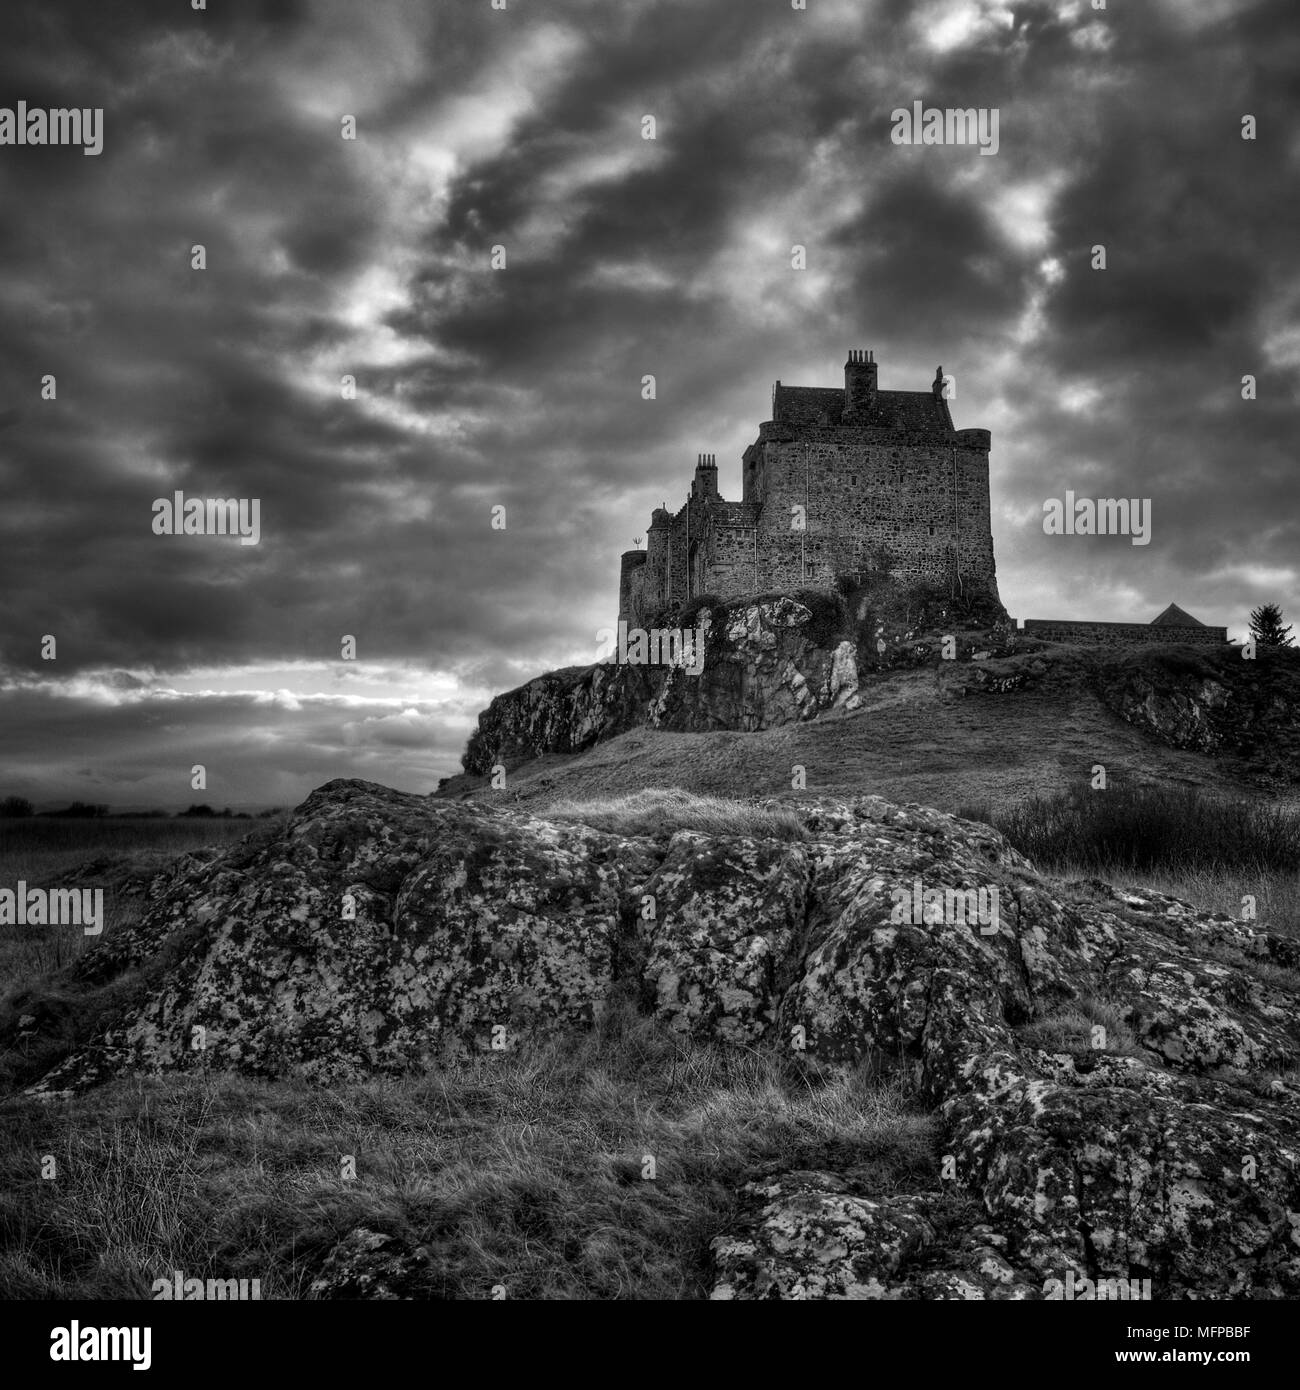 Noir et blanc spectaculaire vision de Duart Castle, la demeure ancestrale du clan Maclean, Ile de Mull, en Ecosse. Banque D'Images